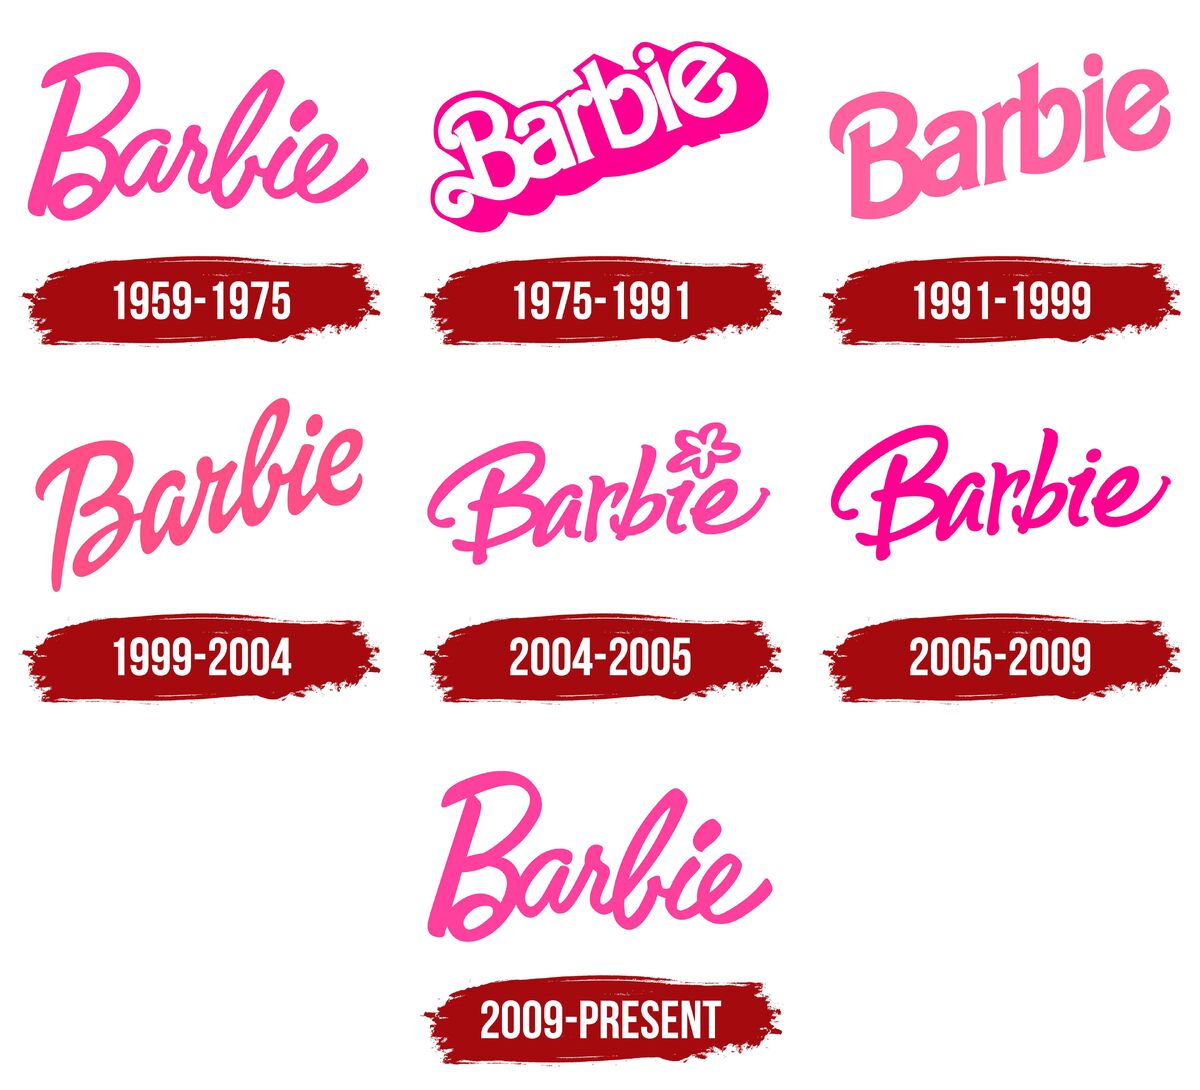 Akkumulerede flyde over maske Barbie | Barbie Wiki | Fandom